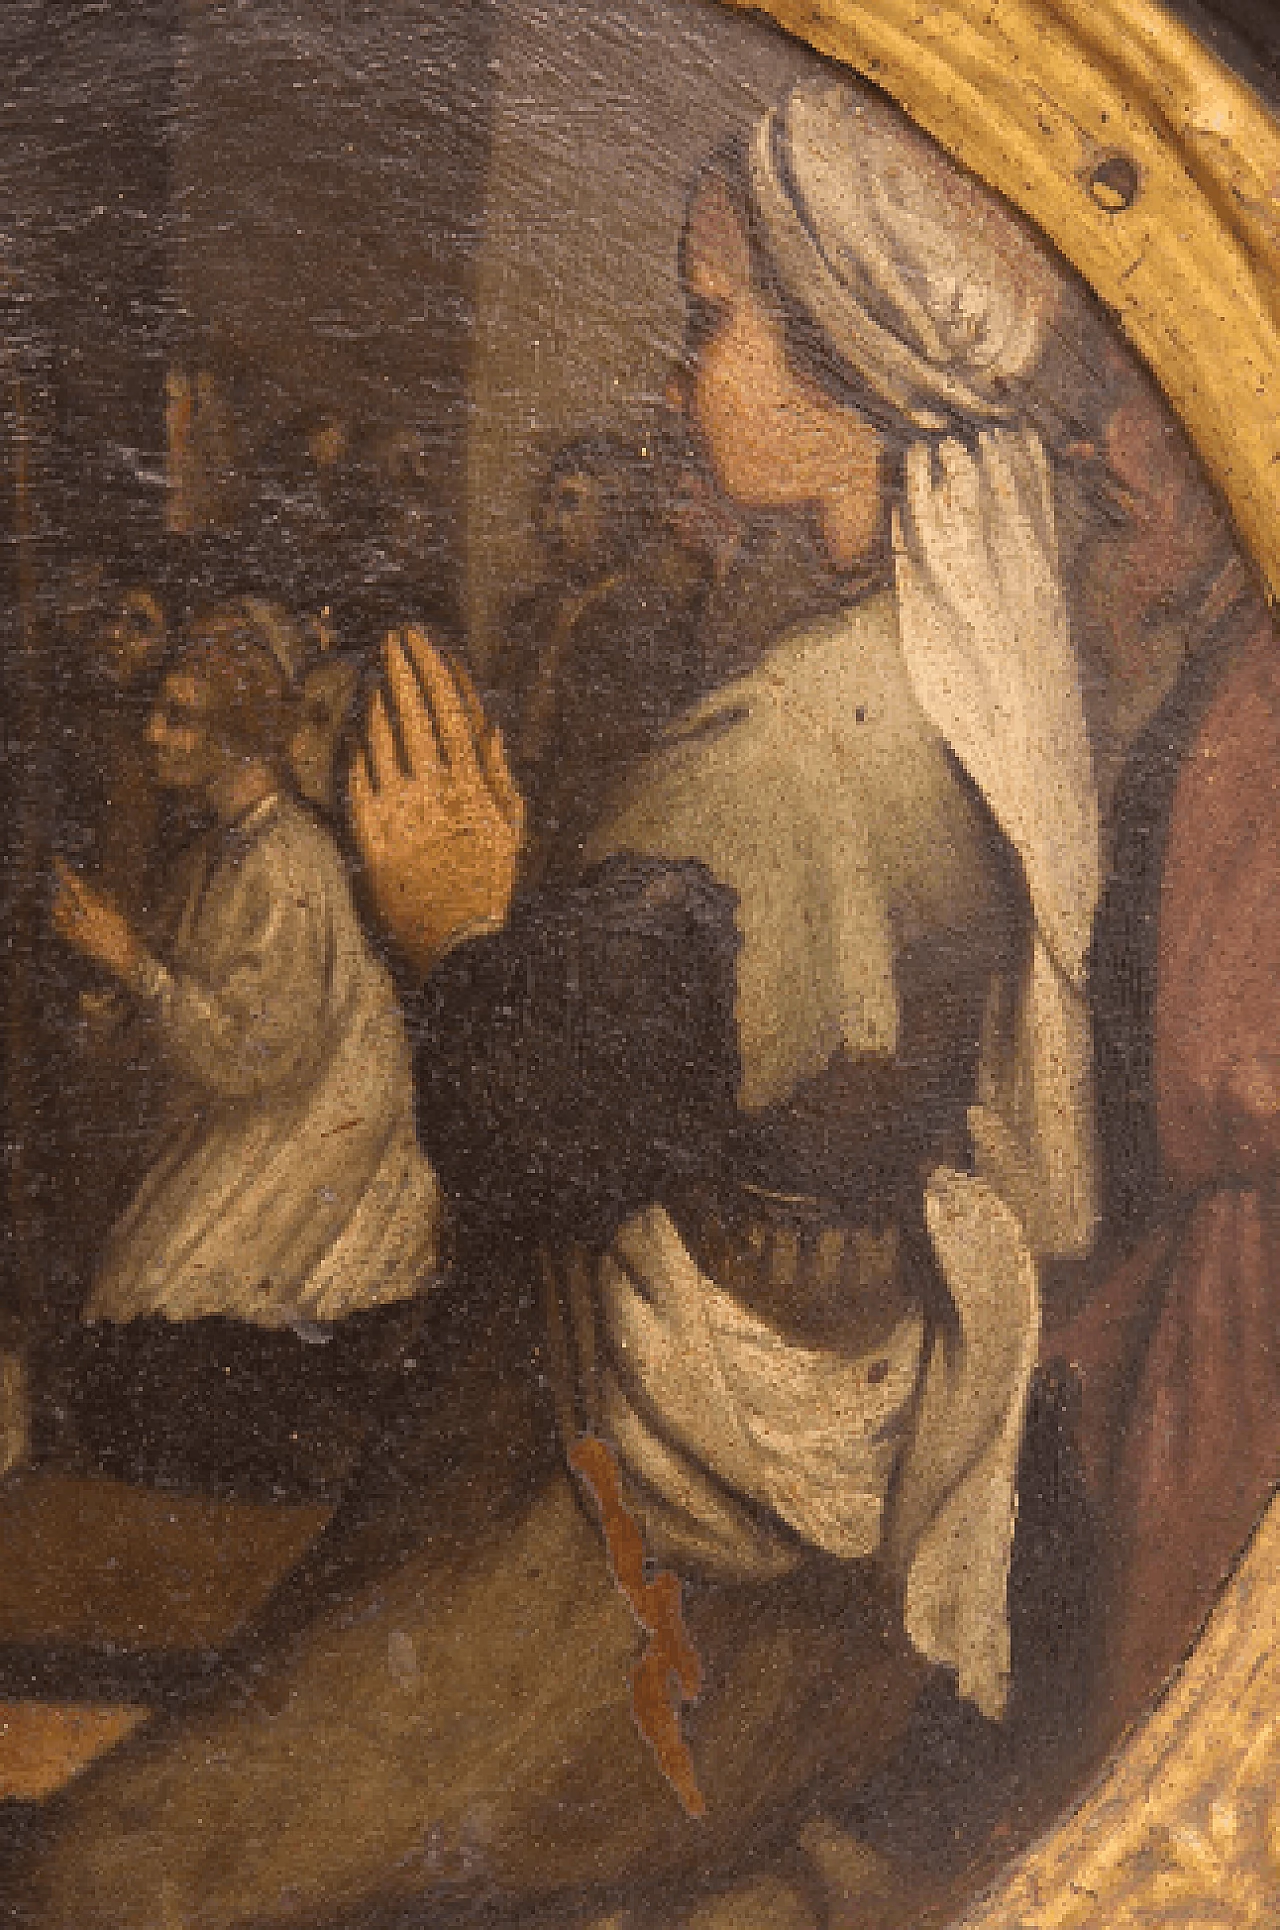 Dipinto della Predica di San Pietro attribuito a Nicolas-André Monsiau, '700 9